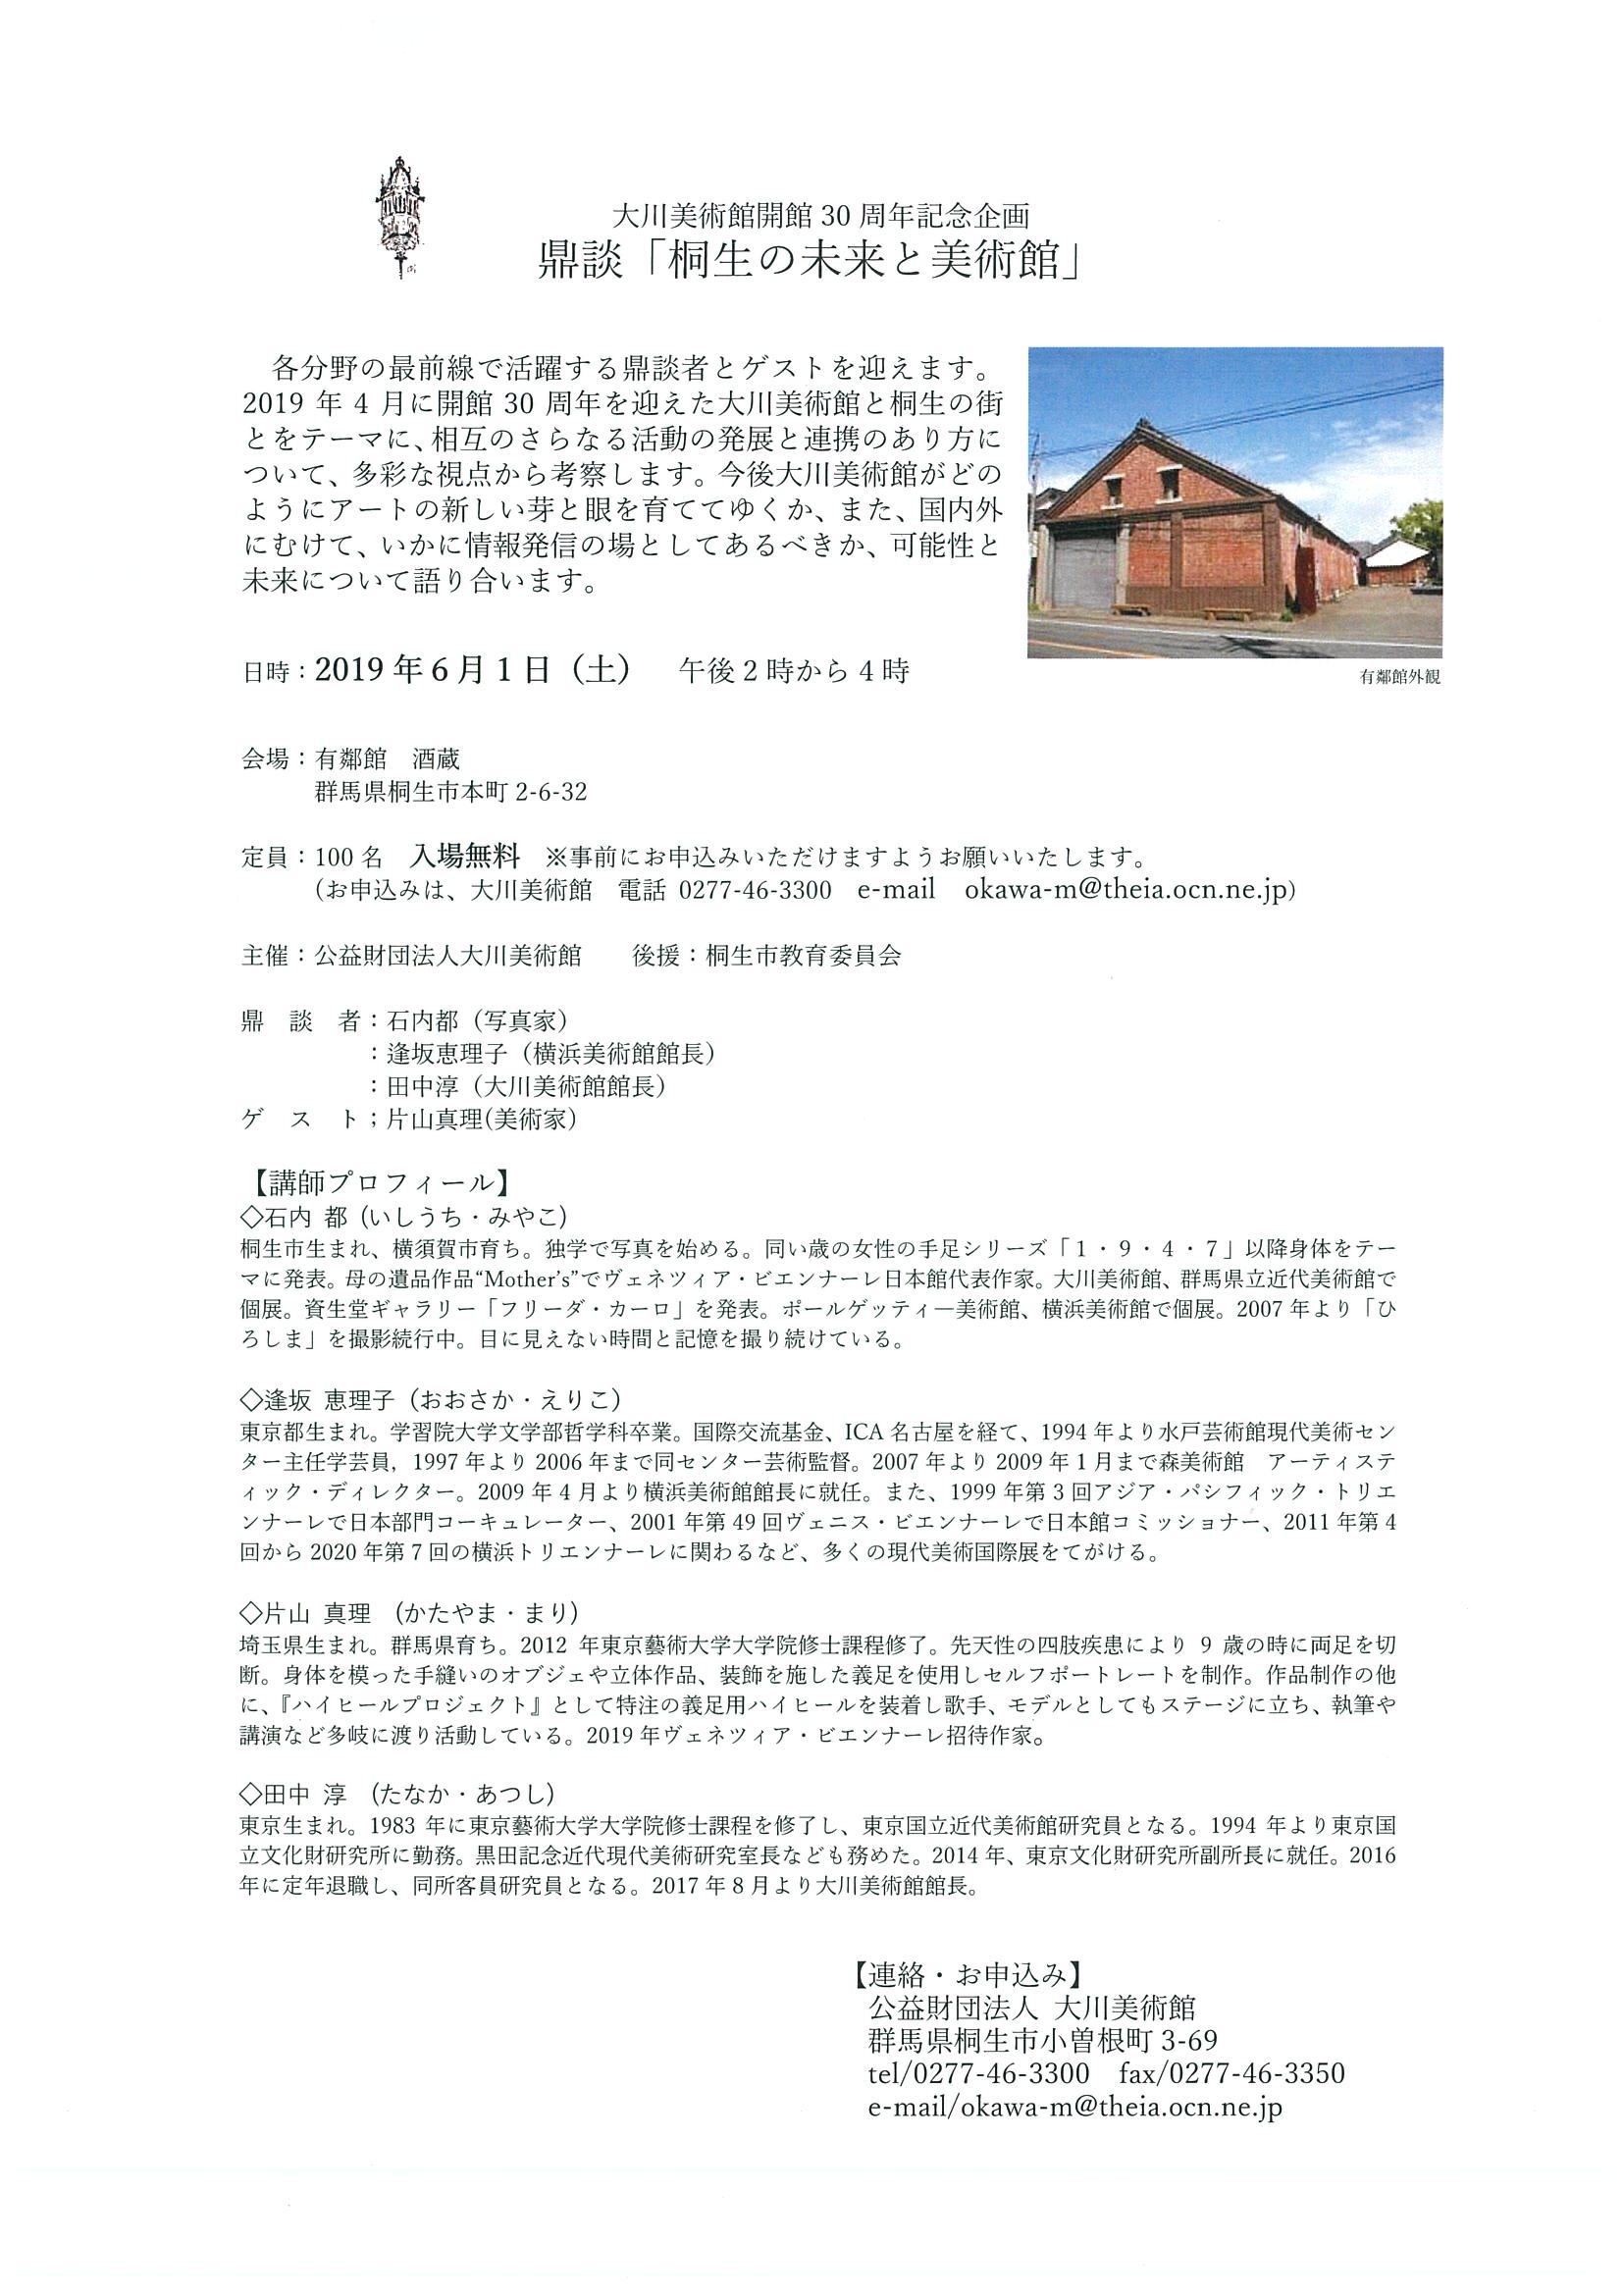 大川美術館開館30周年企画
      【鼎談】
「桐生の未来と美術館」
　開催いたします
